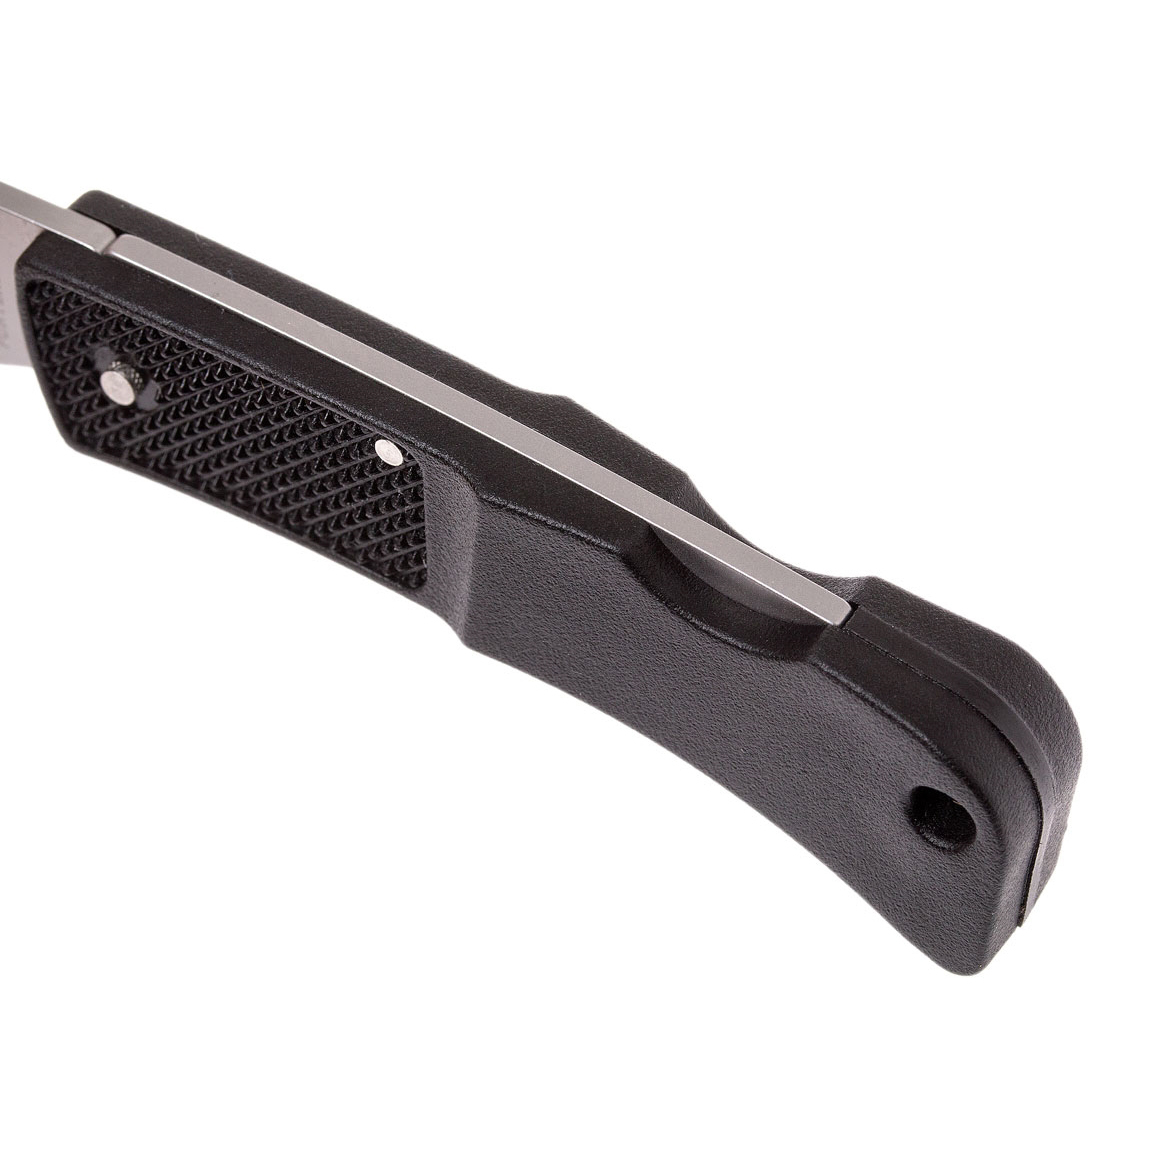 Складной нож Gerber LST Ultralight, сталь 420HC, рукоять термопластик GRN, черный - фото 5